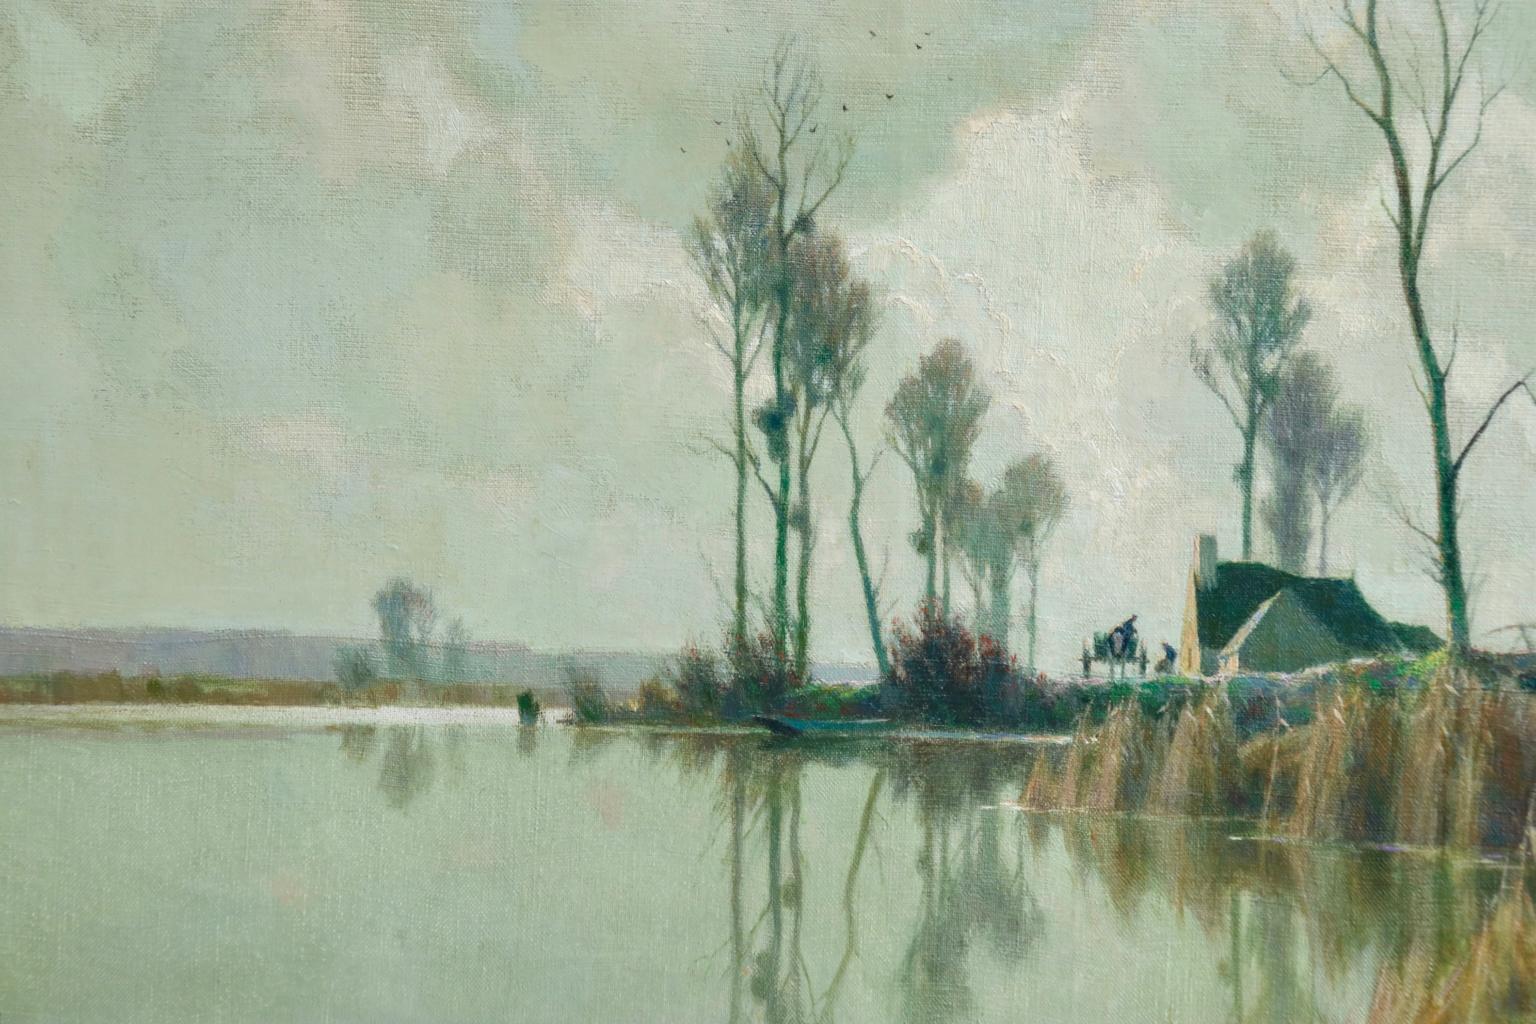 Eclaircie sur le Marais - Impressionist Oil, River in Landscape by A Jacob - Gray Figurative Painting by Alexandre Louis Jacob